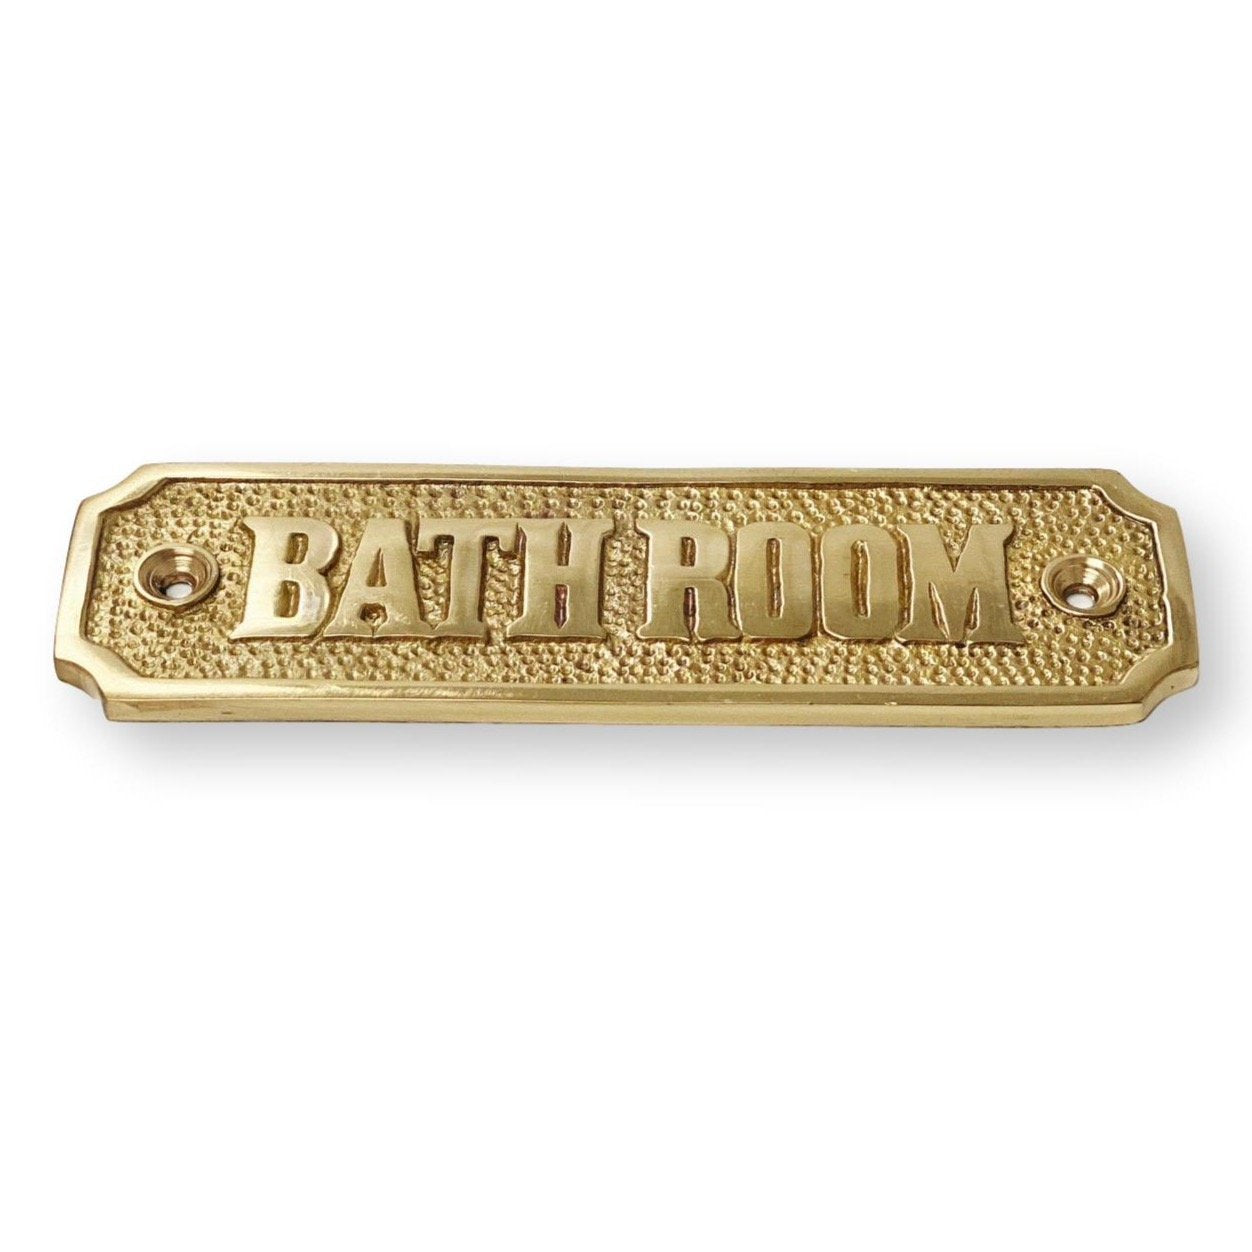 Brass "Bathroom" Door Sign 4-7/16" x 1-4/16" H - Door Hardware Office Sign | Hook